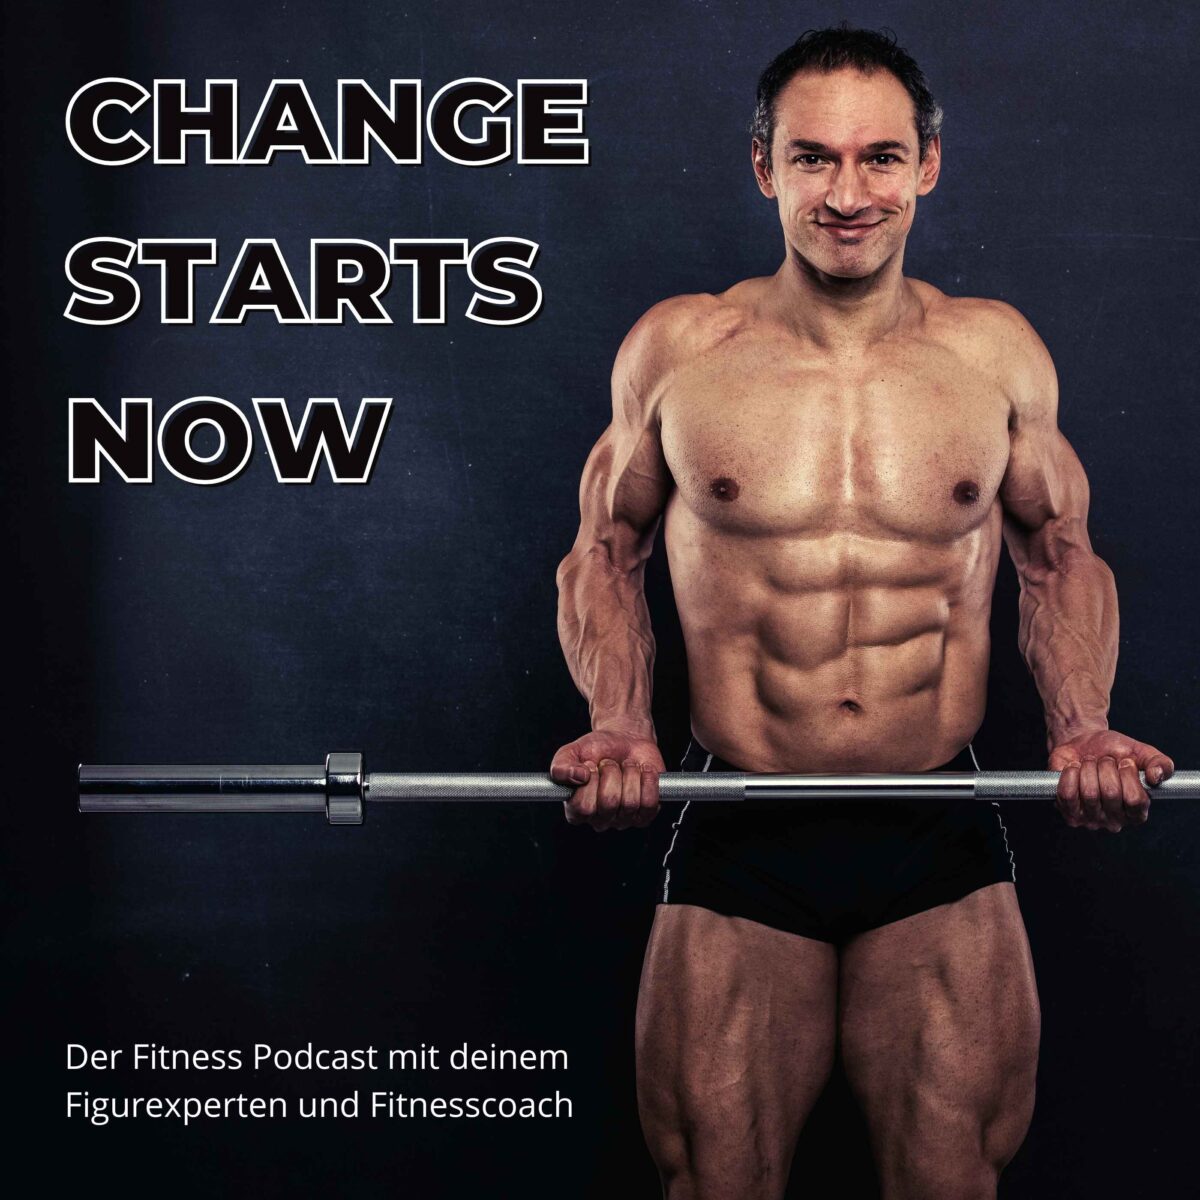 CHANGE STARTS NOW - Der Fitnesspodcast mit dem Figurexperten